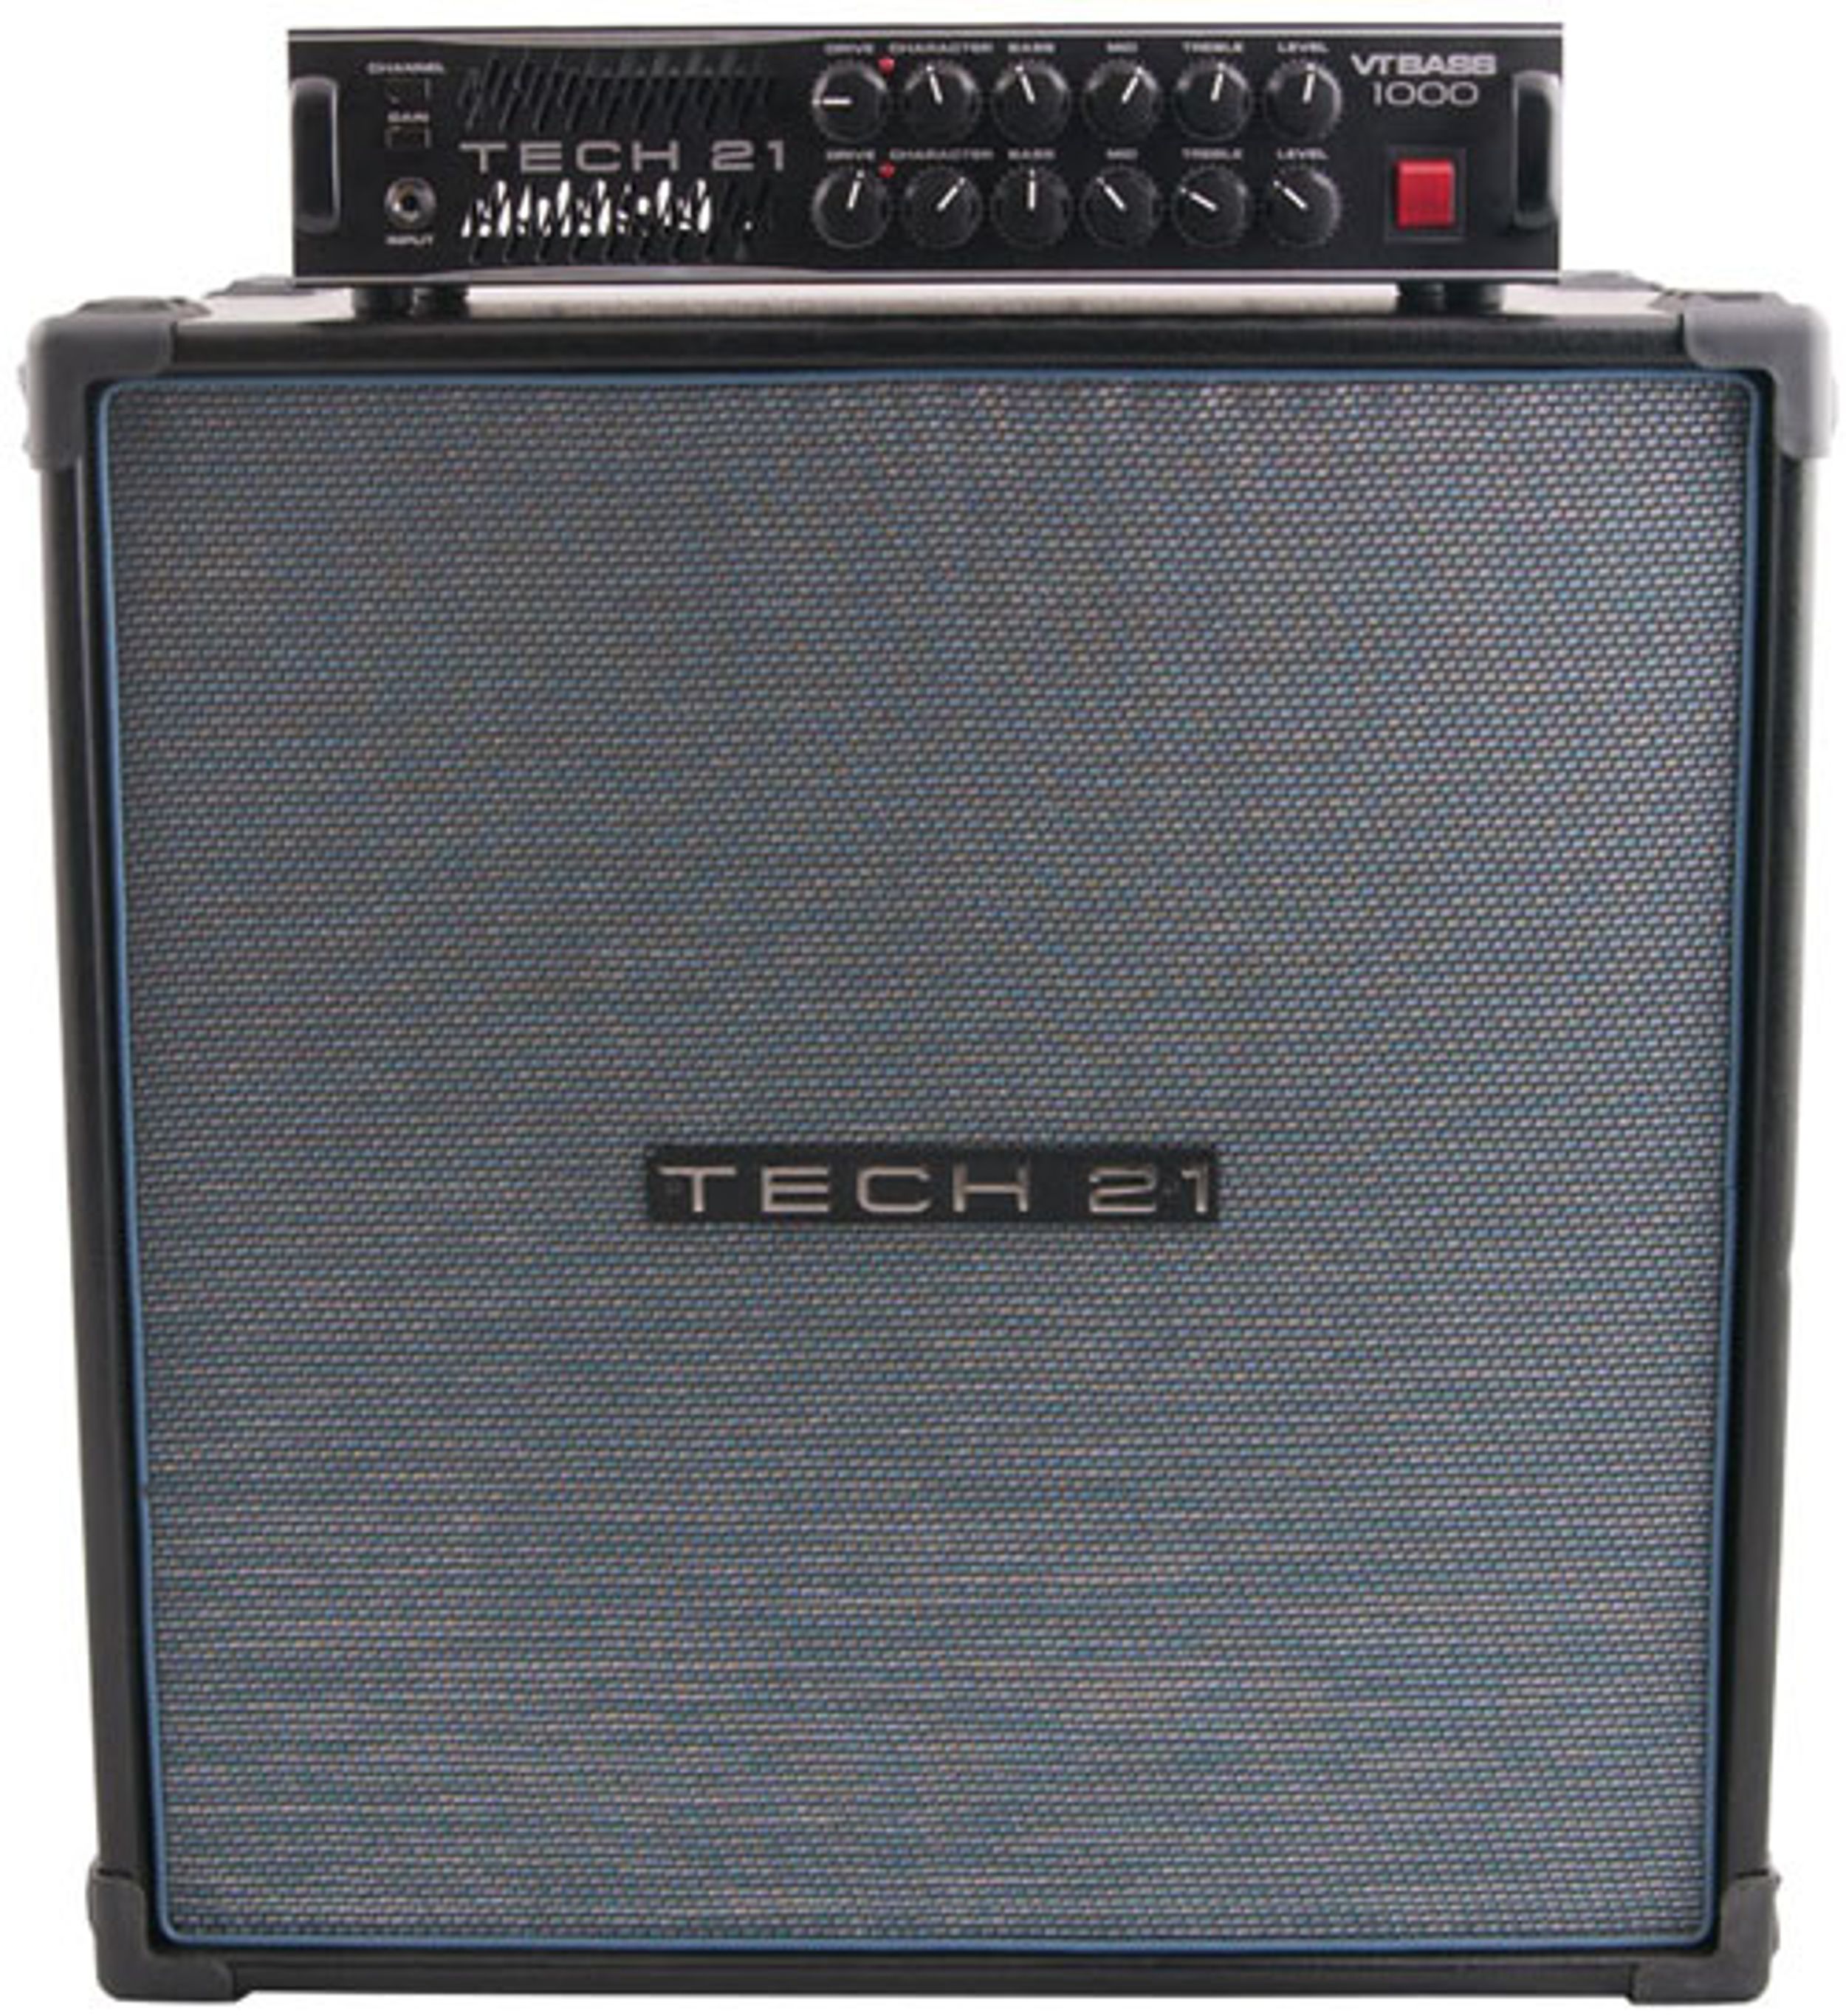 Tech 21 VT Bass 1000 & B410-VT Bass Rig Review